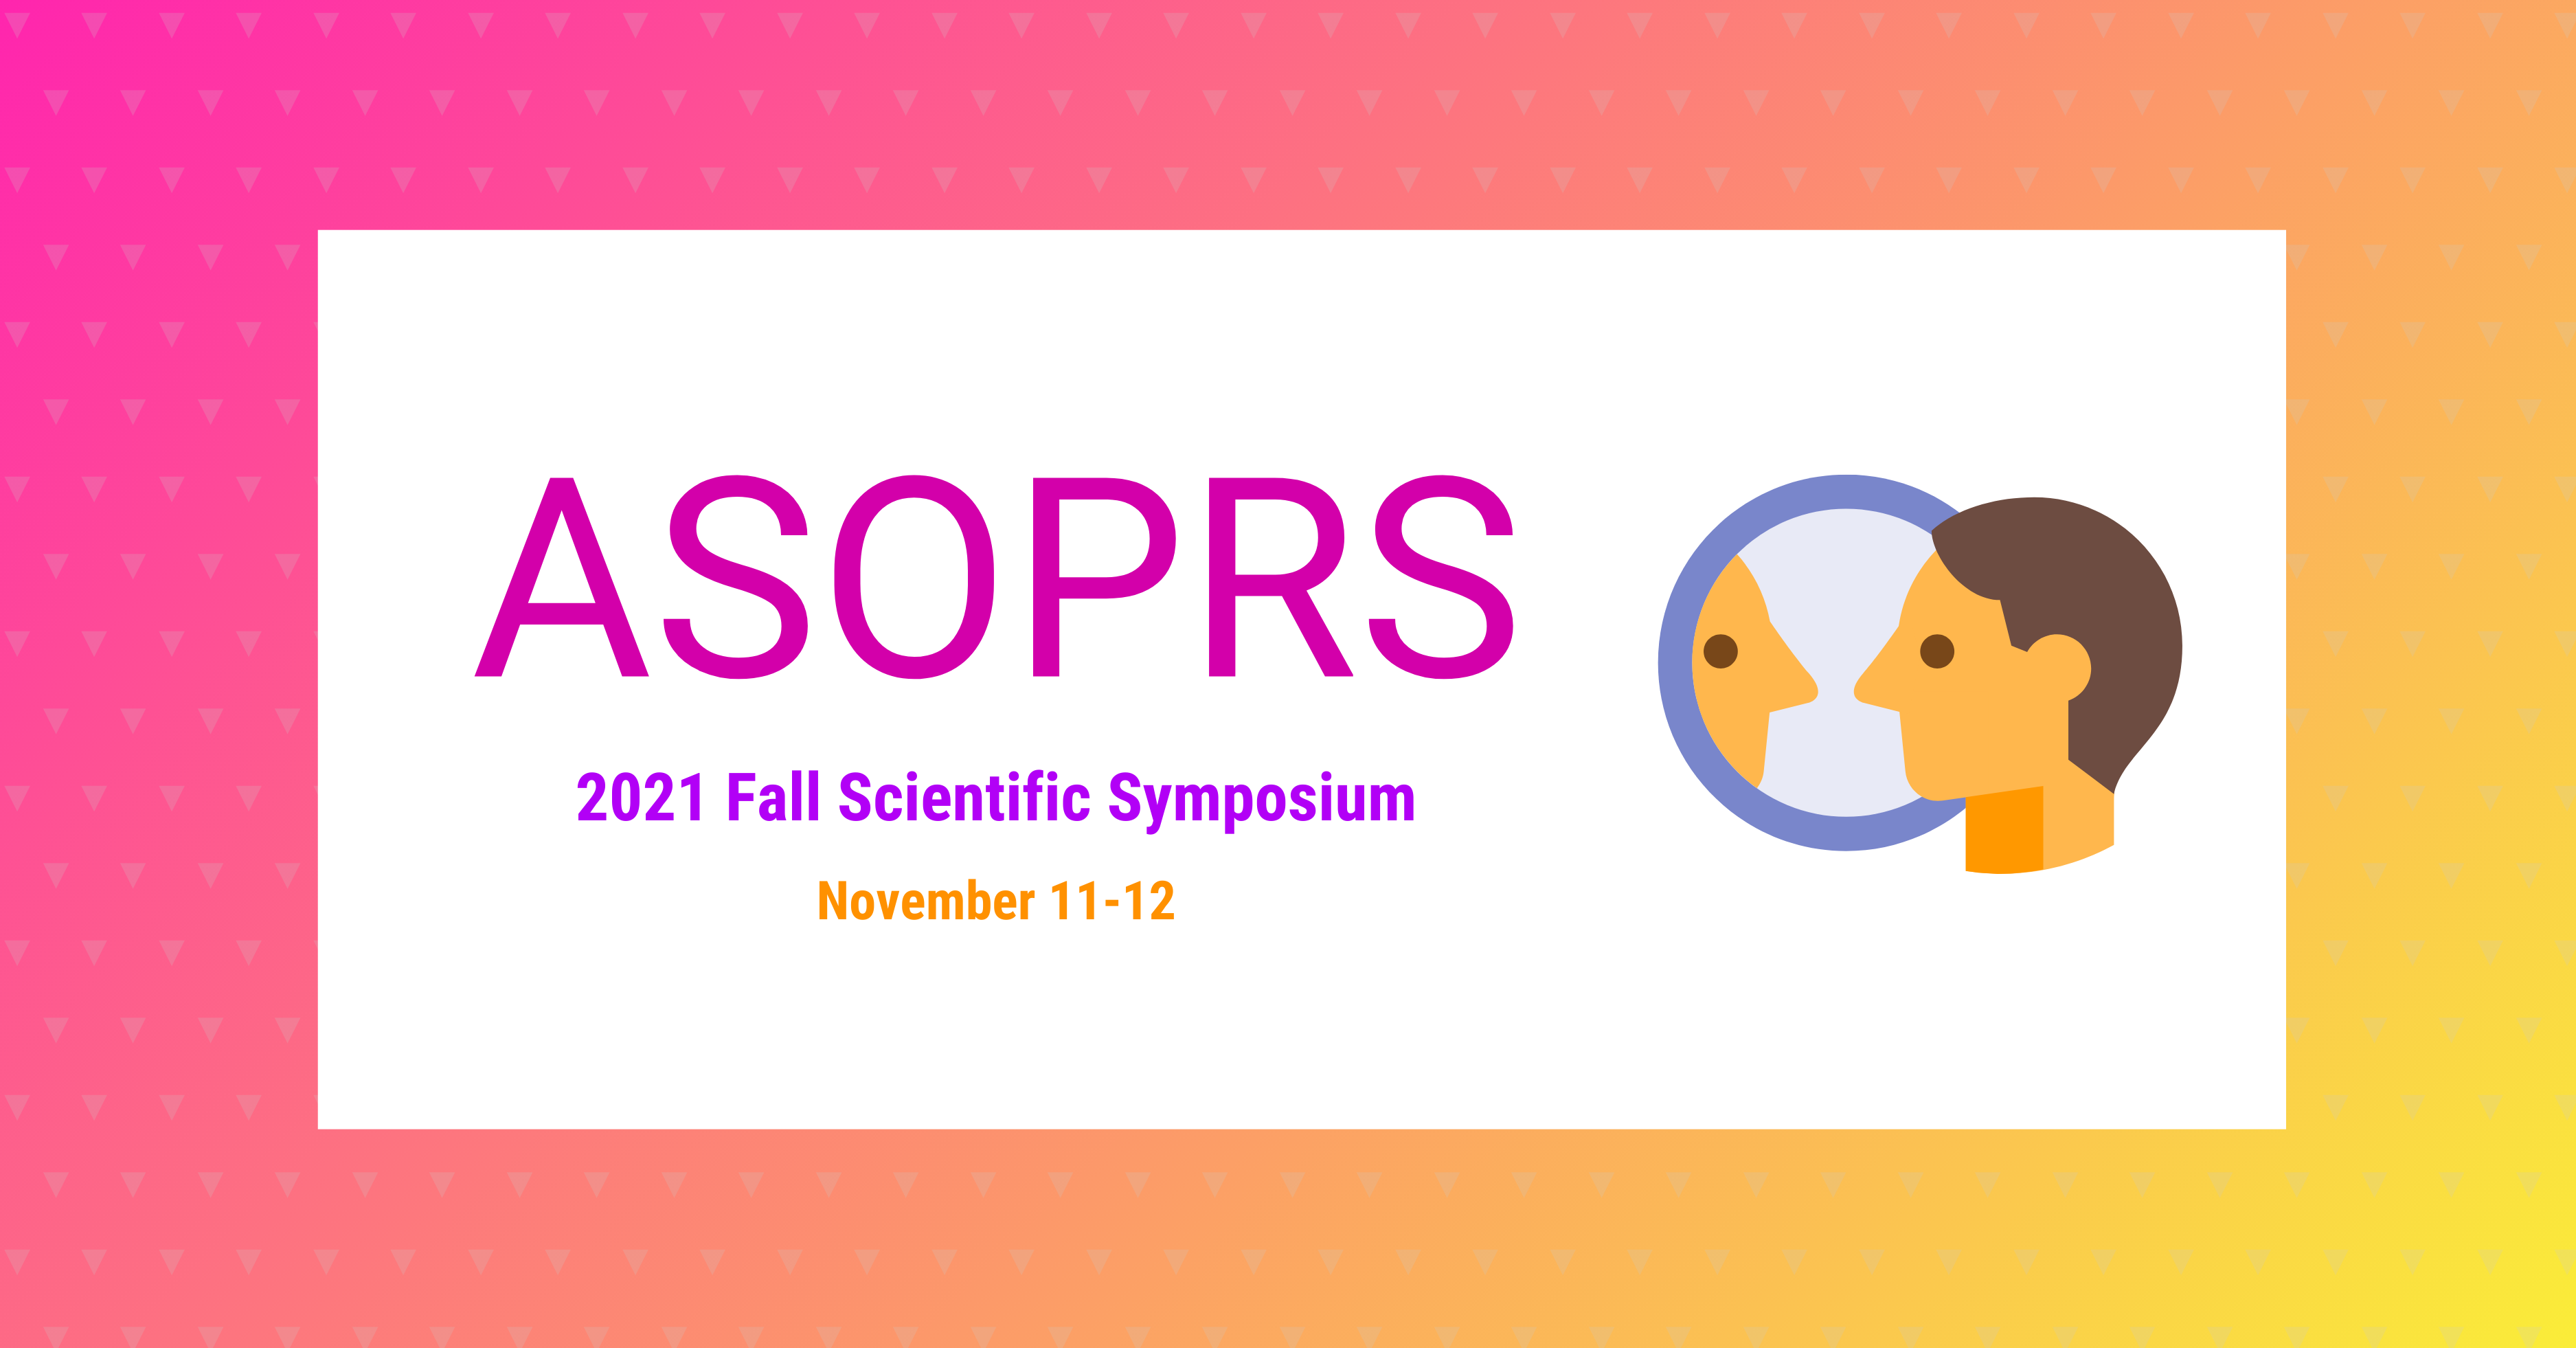 ASOPRS 2021 Fall Scientific Symposium